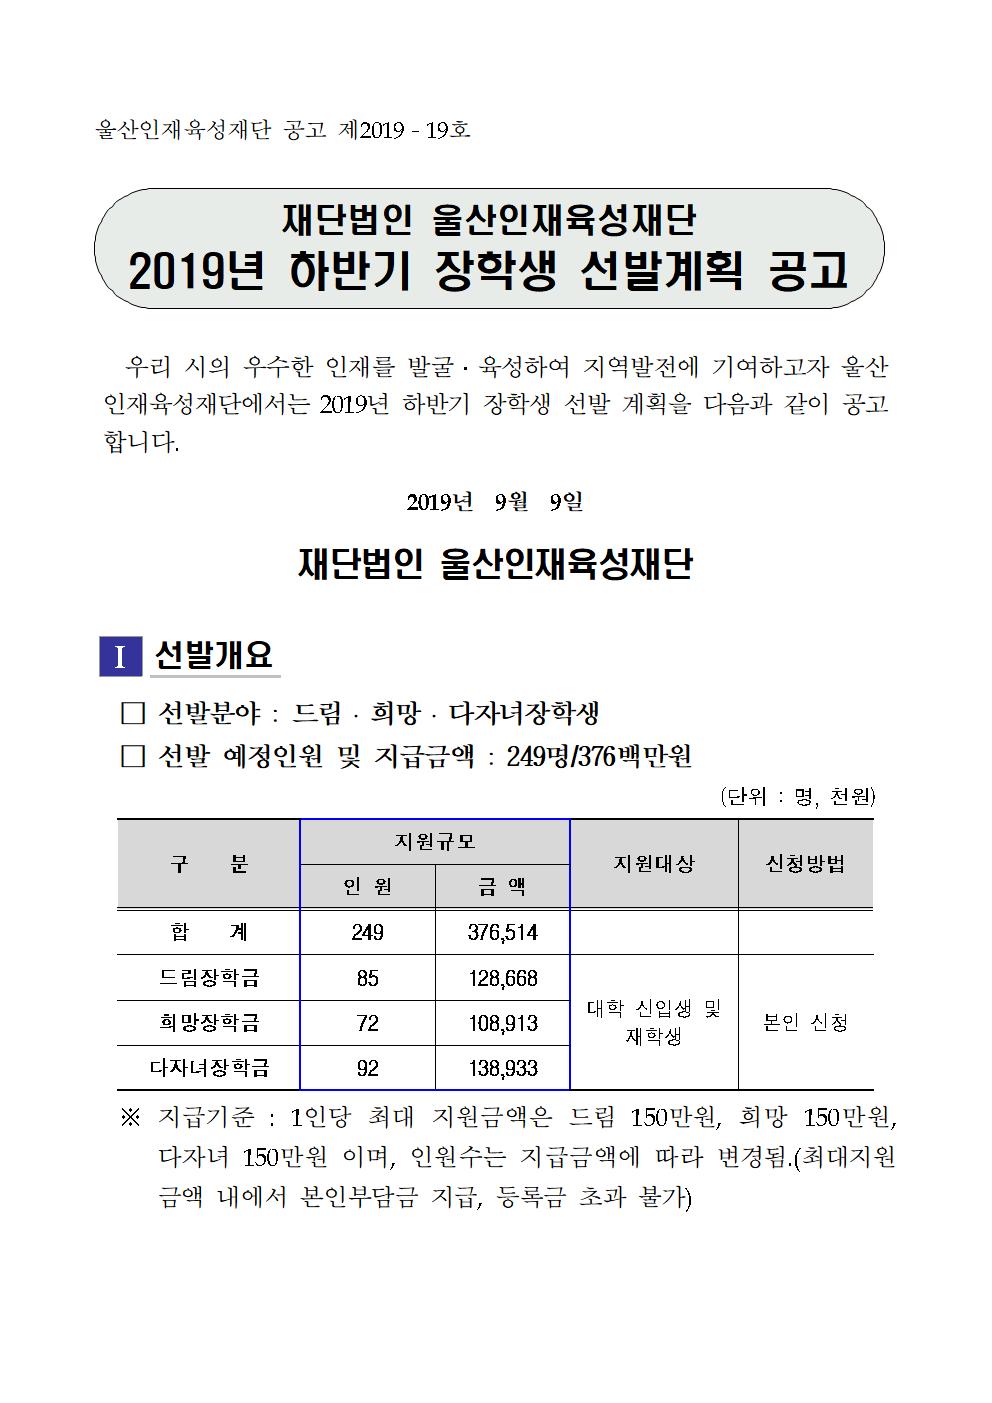 2019-2 재단법인 울산인재육성재단 장학생 선발계획 안내